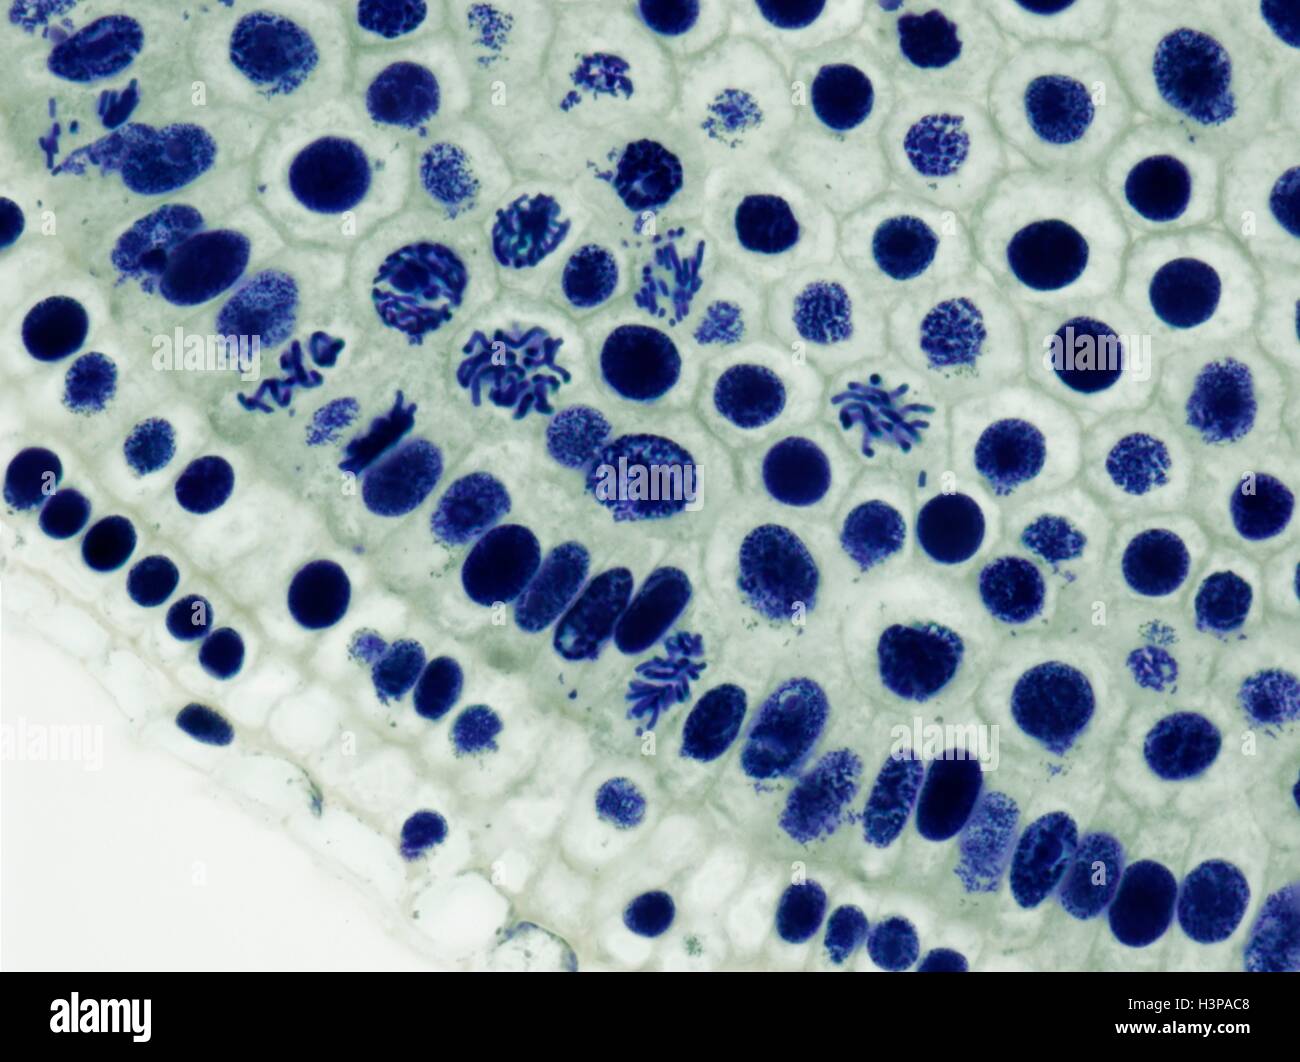 Mitose. Leichte Schliffbild der Wurzelspitze der Zwiebel (Allium Cepa) Zellen in Mitose (nuclear Division). Vergrößerung: X600 wenn bei 10 cm breite gedruckt. Stockfoto